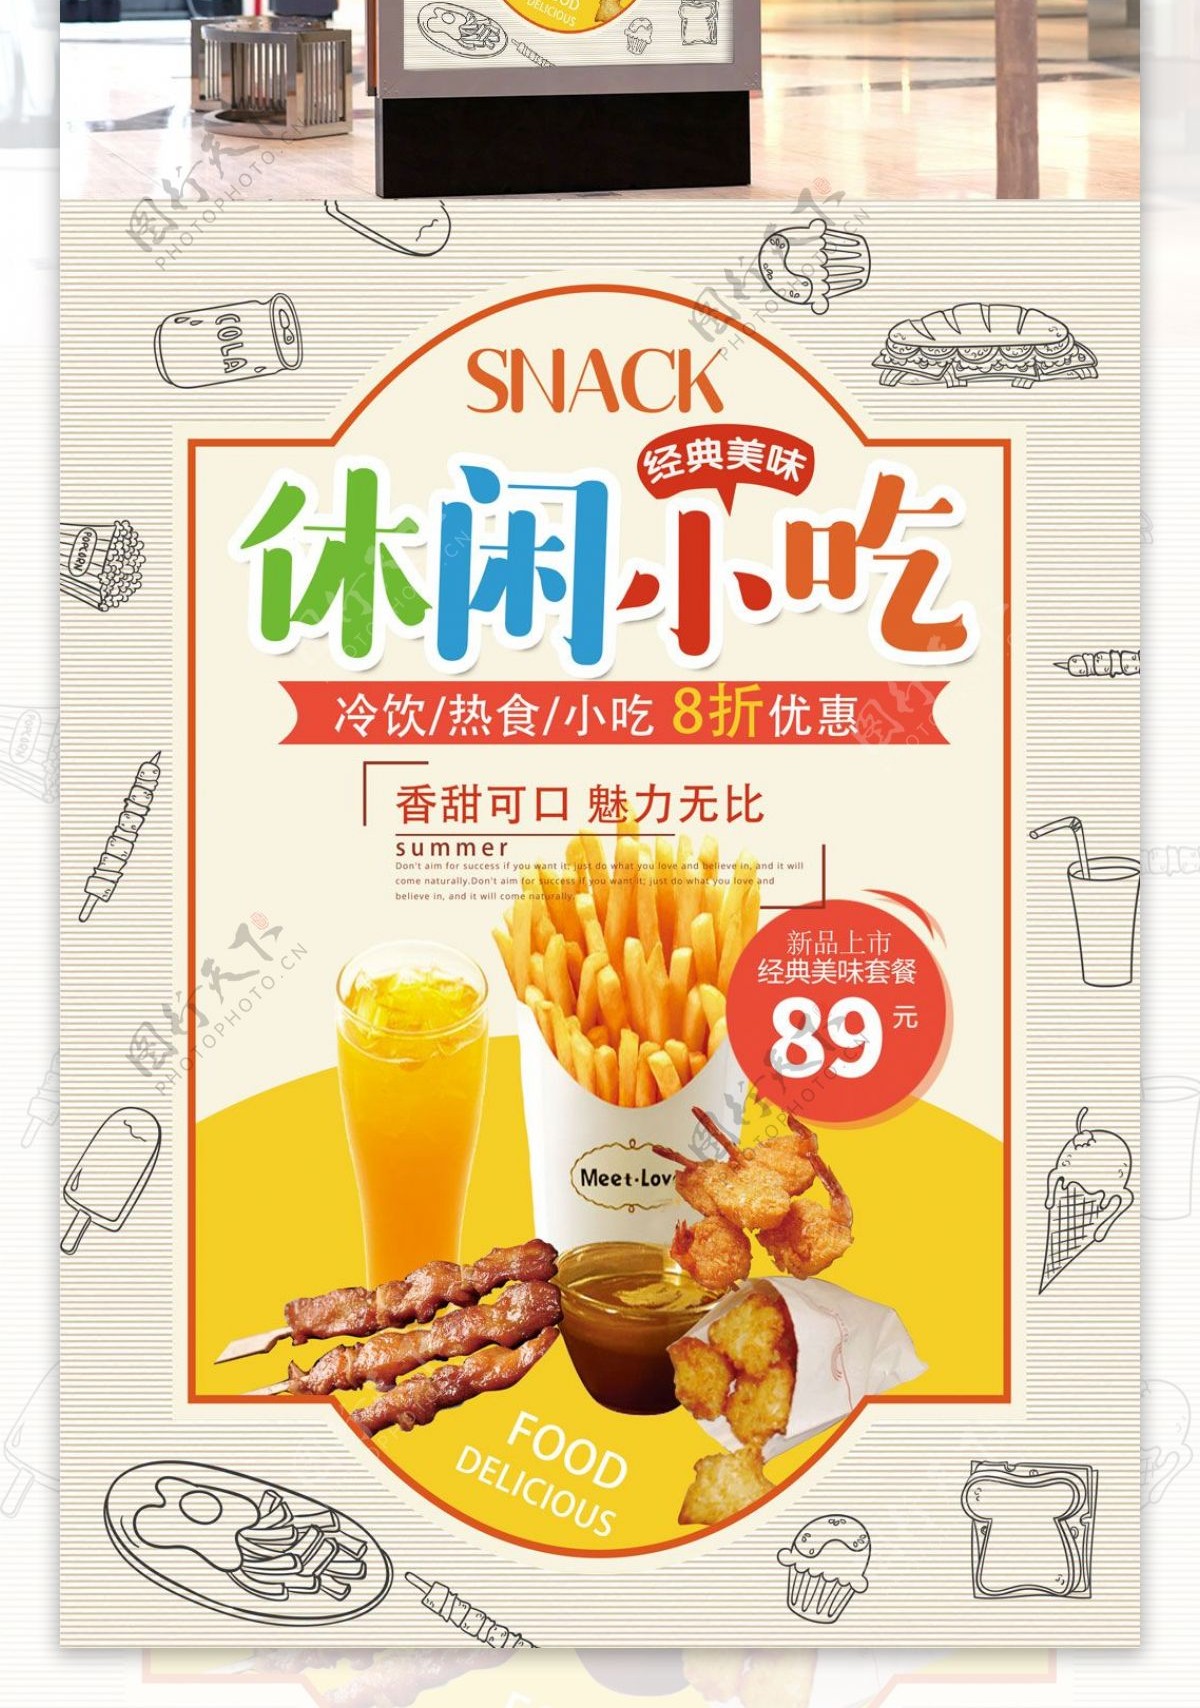 休闲小吃美食店新品套餐宣传海报设计